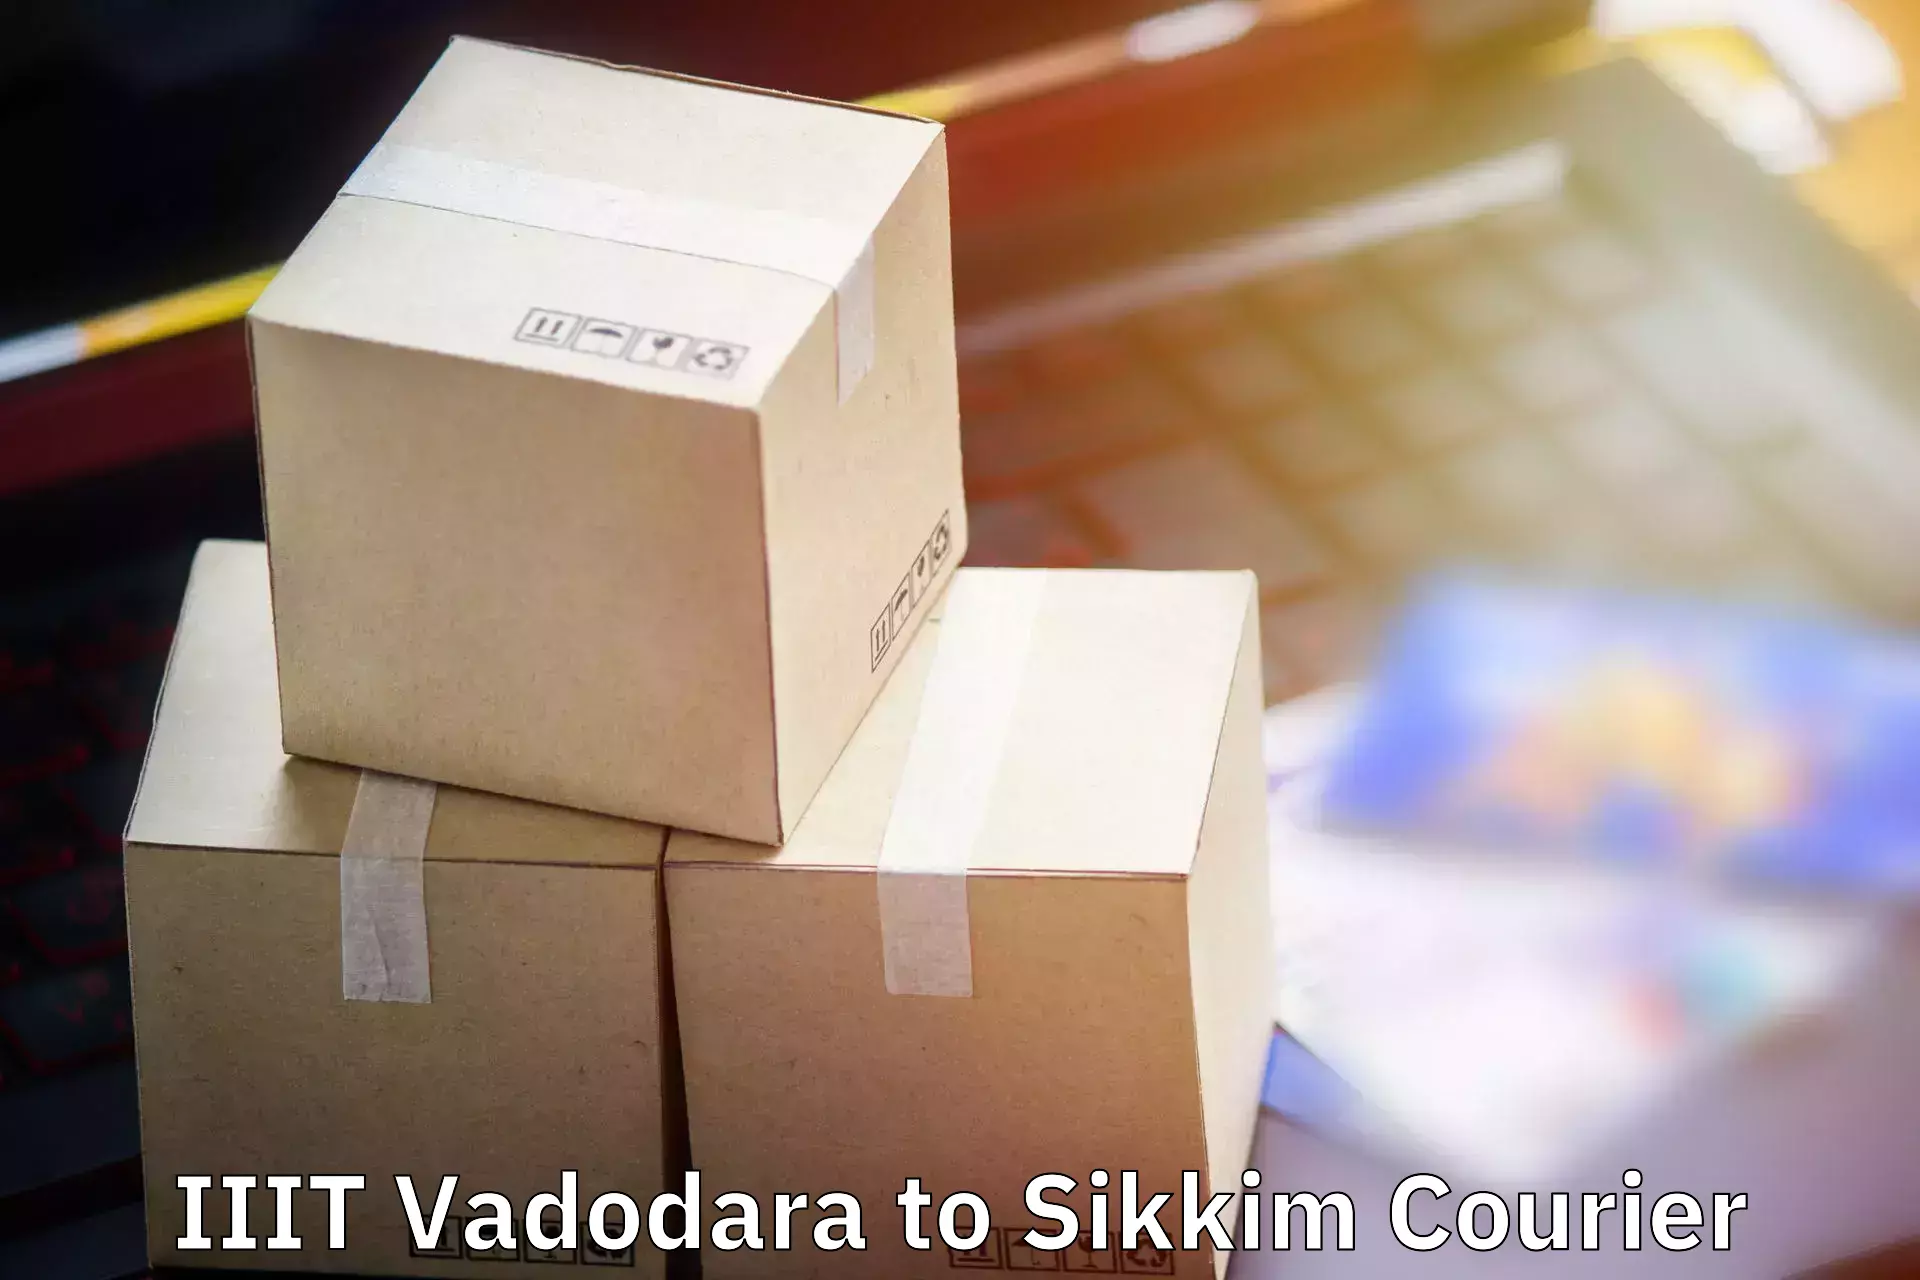 Baggage transport calculator IIIT Vadodara to Sikkim